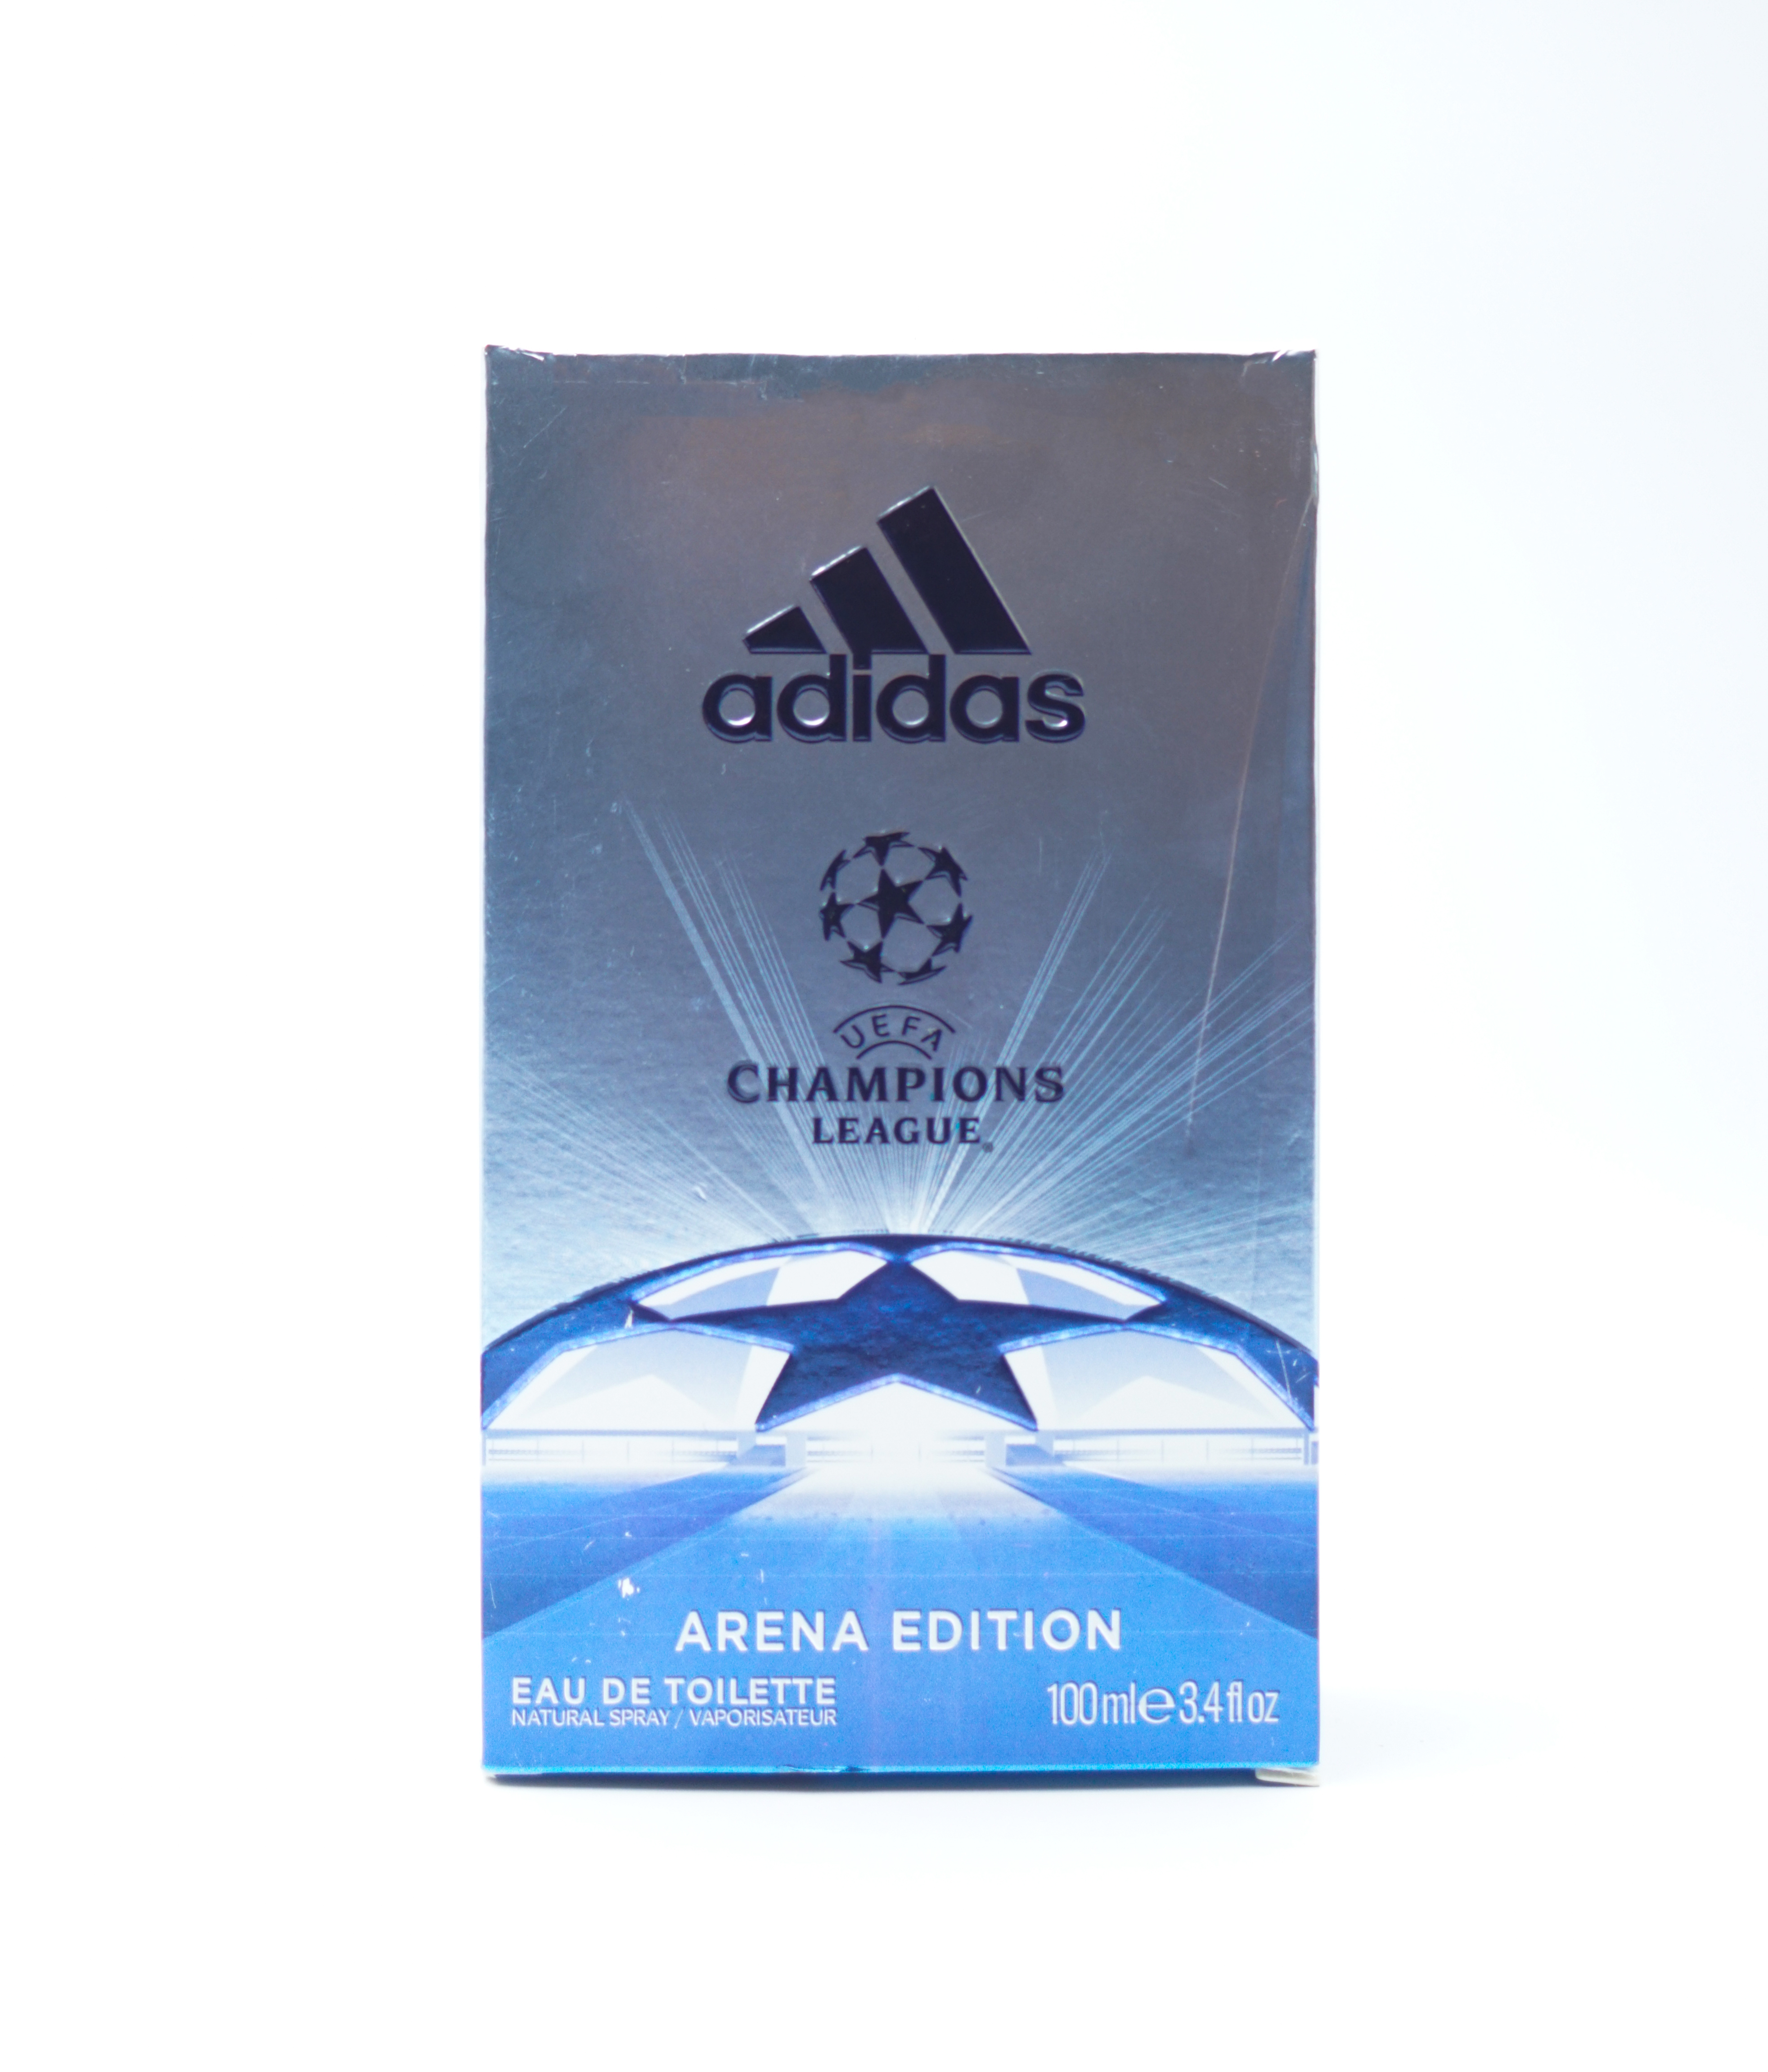 Adidas Champions League 100 ml Eau De Toilette Natural Spray Vaporisateur Perfume For Men SKU 96805